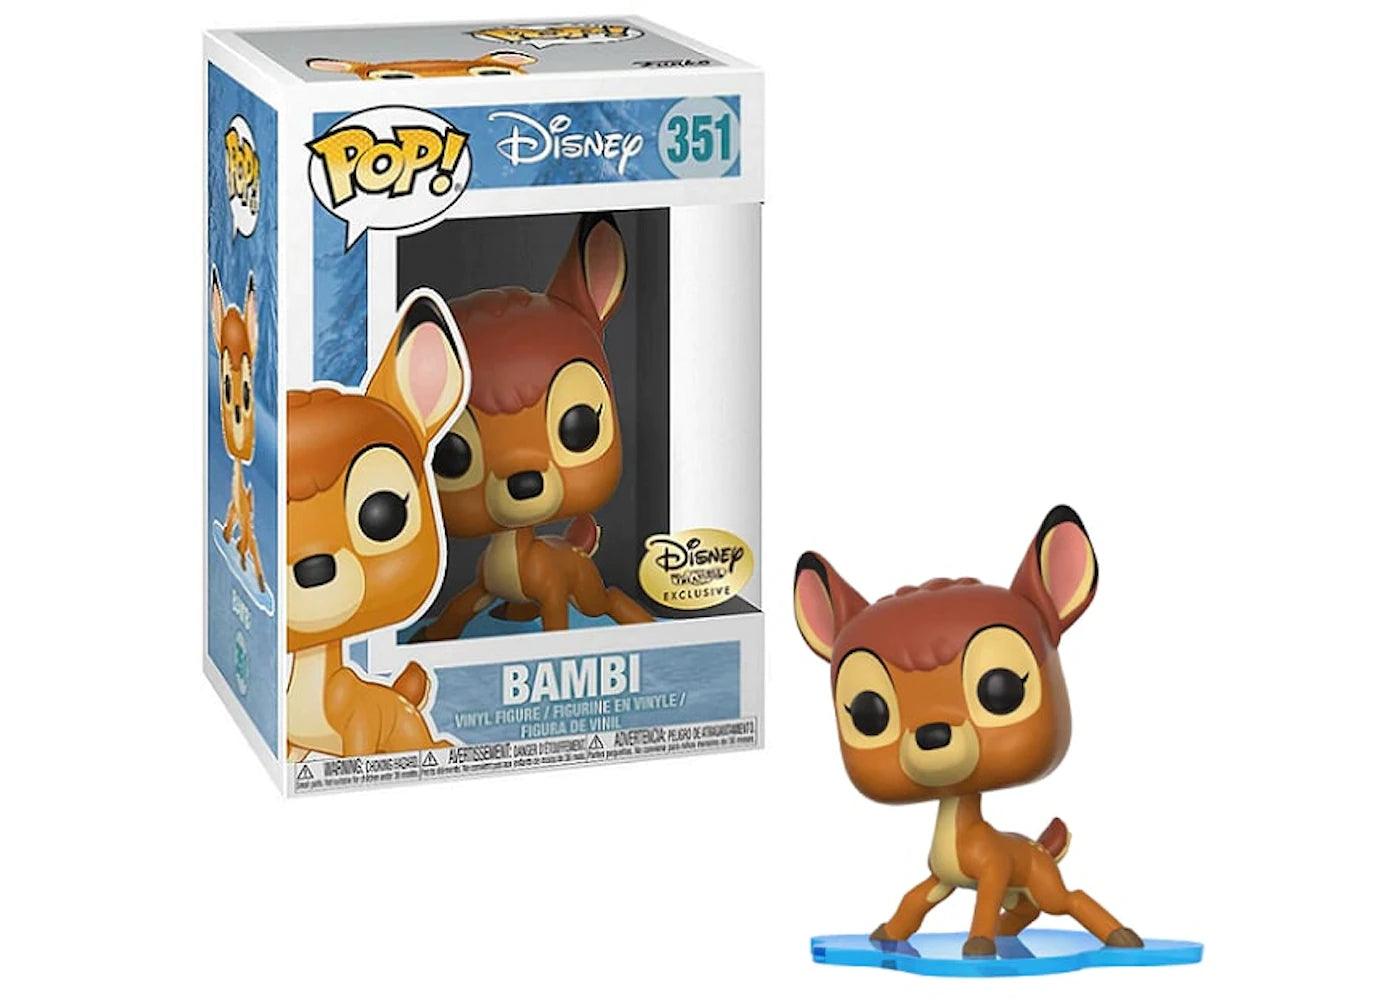 Pop! Disney - Bambi - #351 - Disney Treasures EXCLUSIVE - Hobby Champion Inc